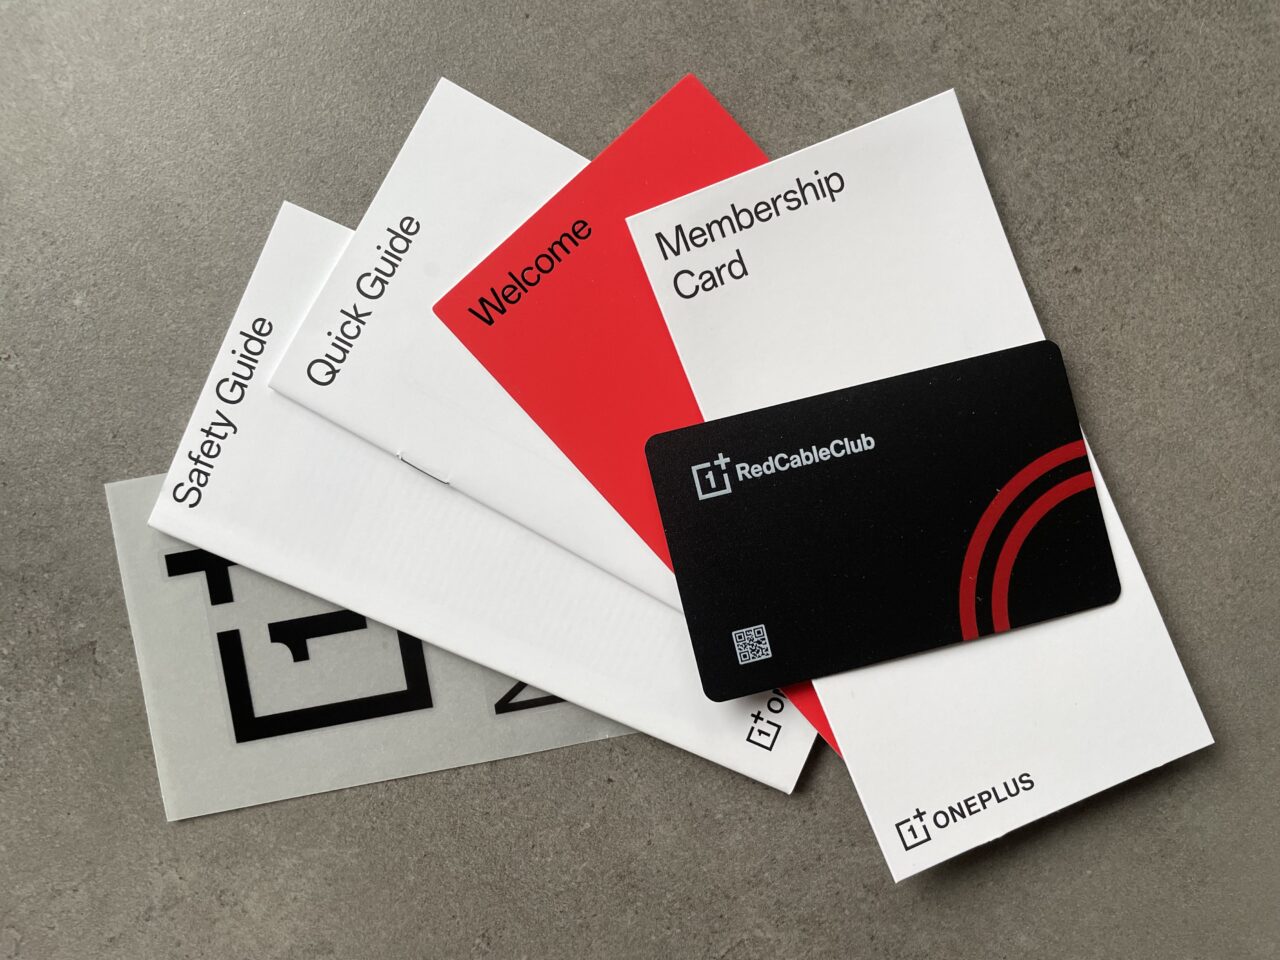 Rozmieszczone na szarym tle materiały powitalne firmy OnePlus, w tym przewodniki oraz czarna karta członkowska Red Cable Club.